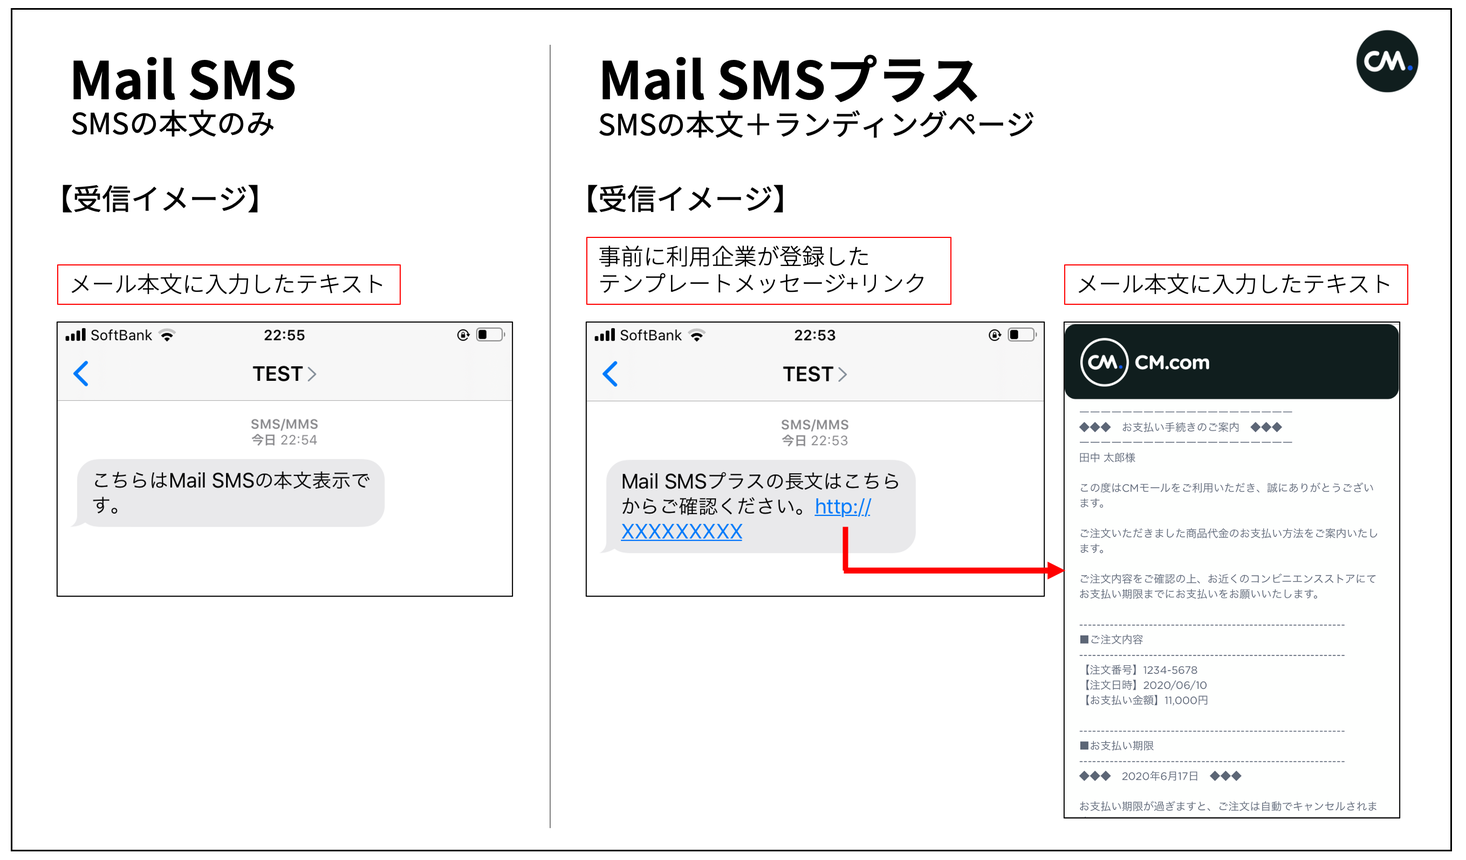 30秒でsms配信 メールアドレスからsmsが送れる Mail Sms の進化版を月額で提供開始 Cm Com Japan 株式会社のプレスリリース